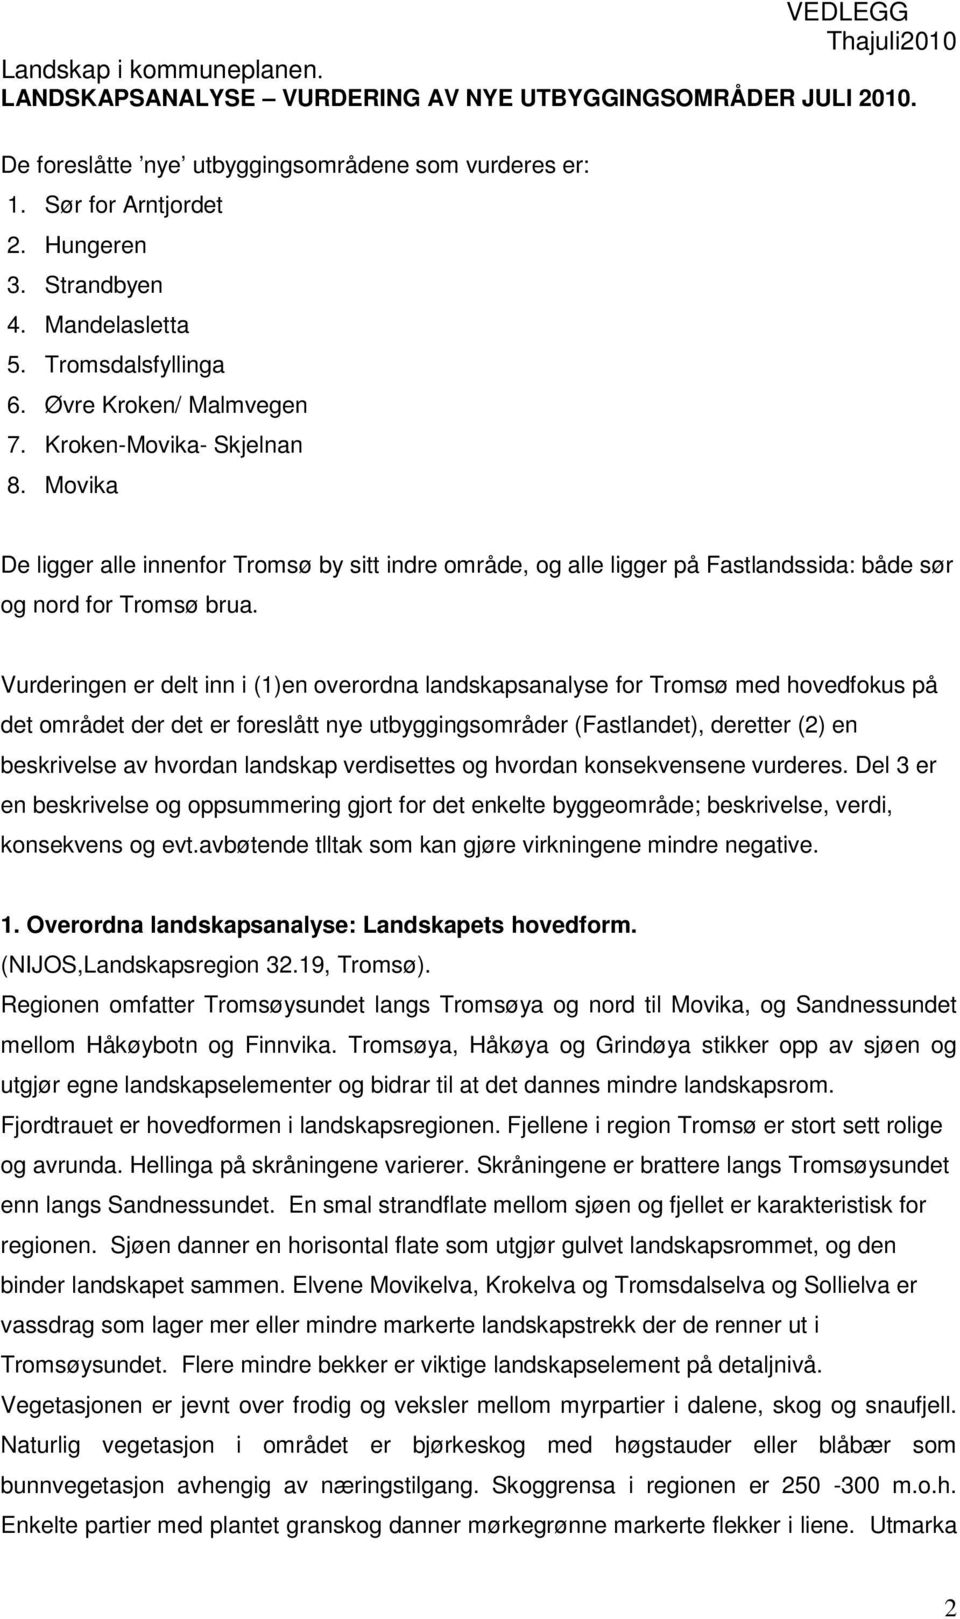 Vurderingen er delt inn i (1)en overordna landskapsanalyse for Tromsø med hovedfokus på det området der det er foreslått nye utbyggingsområder (Fastlandet), deretter (2) en beskrivelse av hvordan